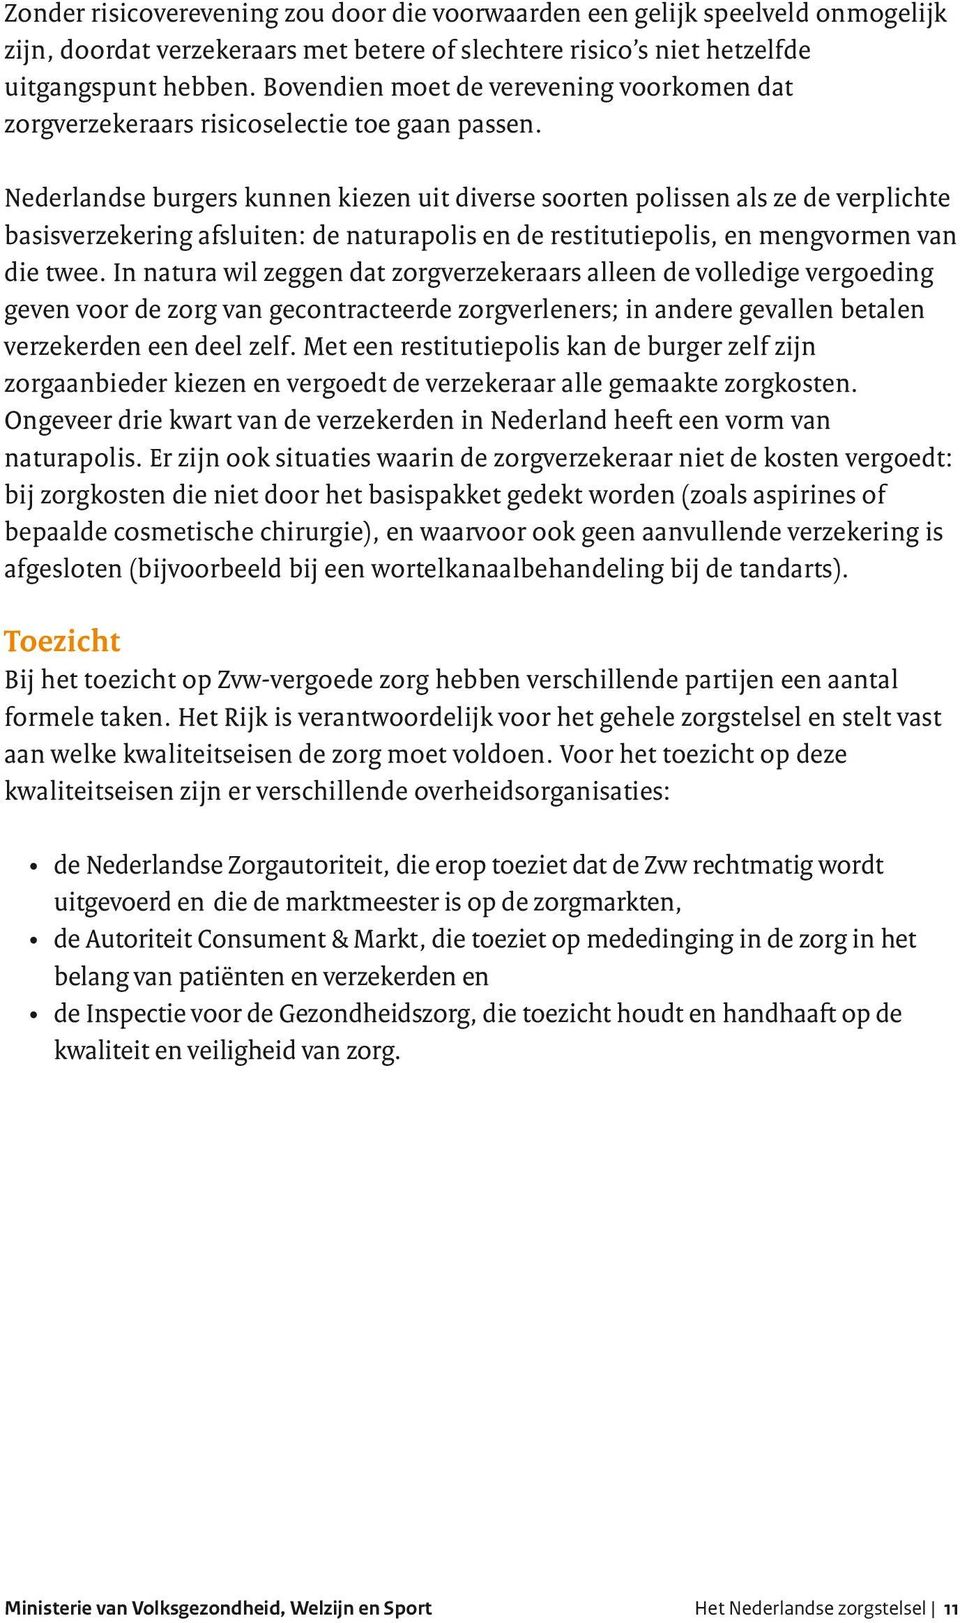 Nederlandse burgers kunnen kiezen uit diverse soorten polissen als ze de verplichte basisverzekering afsluiten: de naturapolis en de restitutiepolis, en mengvormen van die twee.